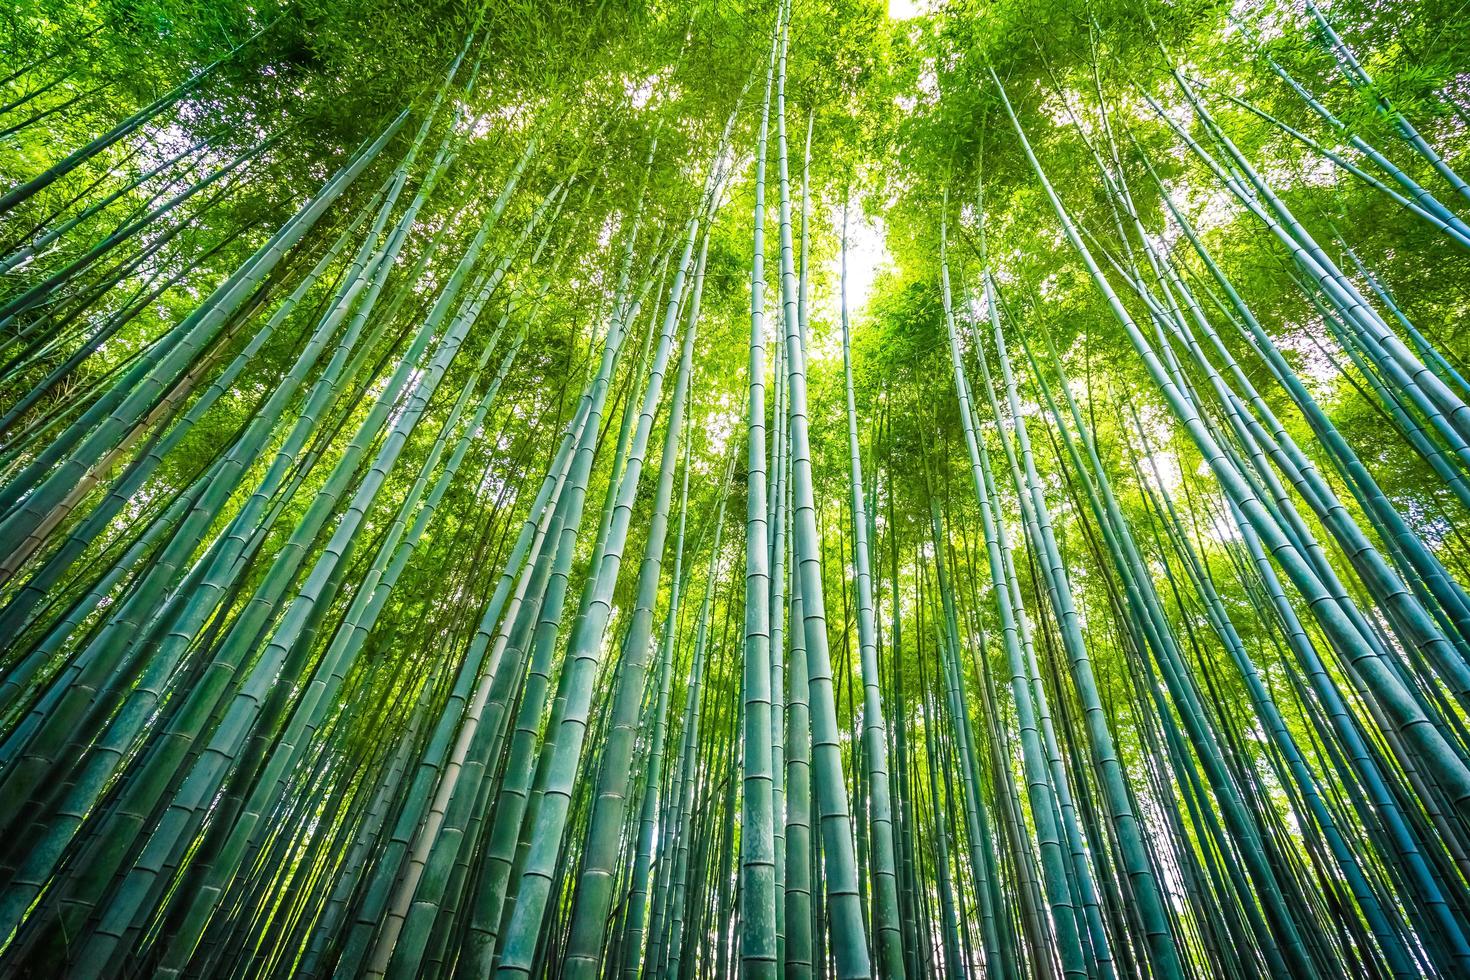 bosque de bambu na floresta em arashiyama em kyoto, japão foto